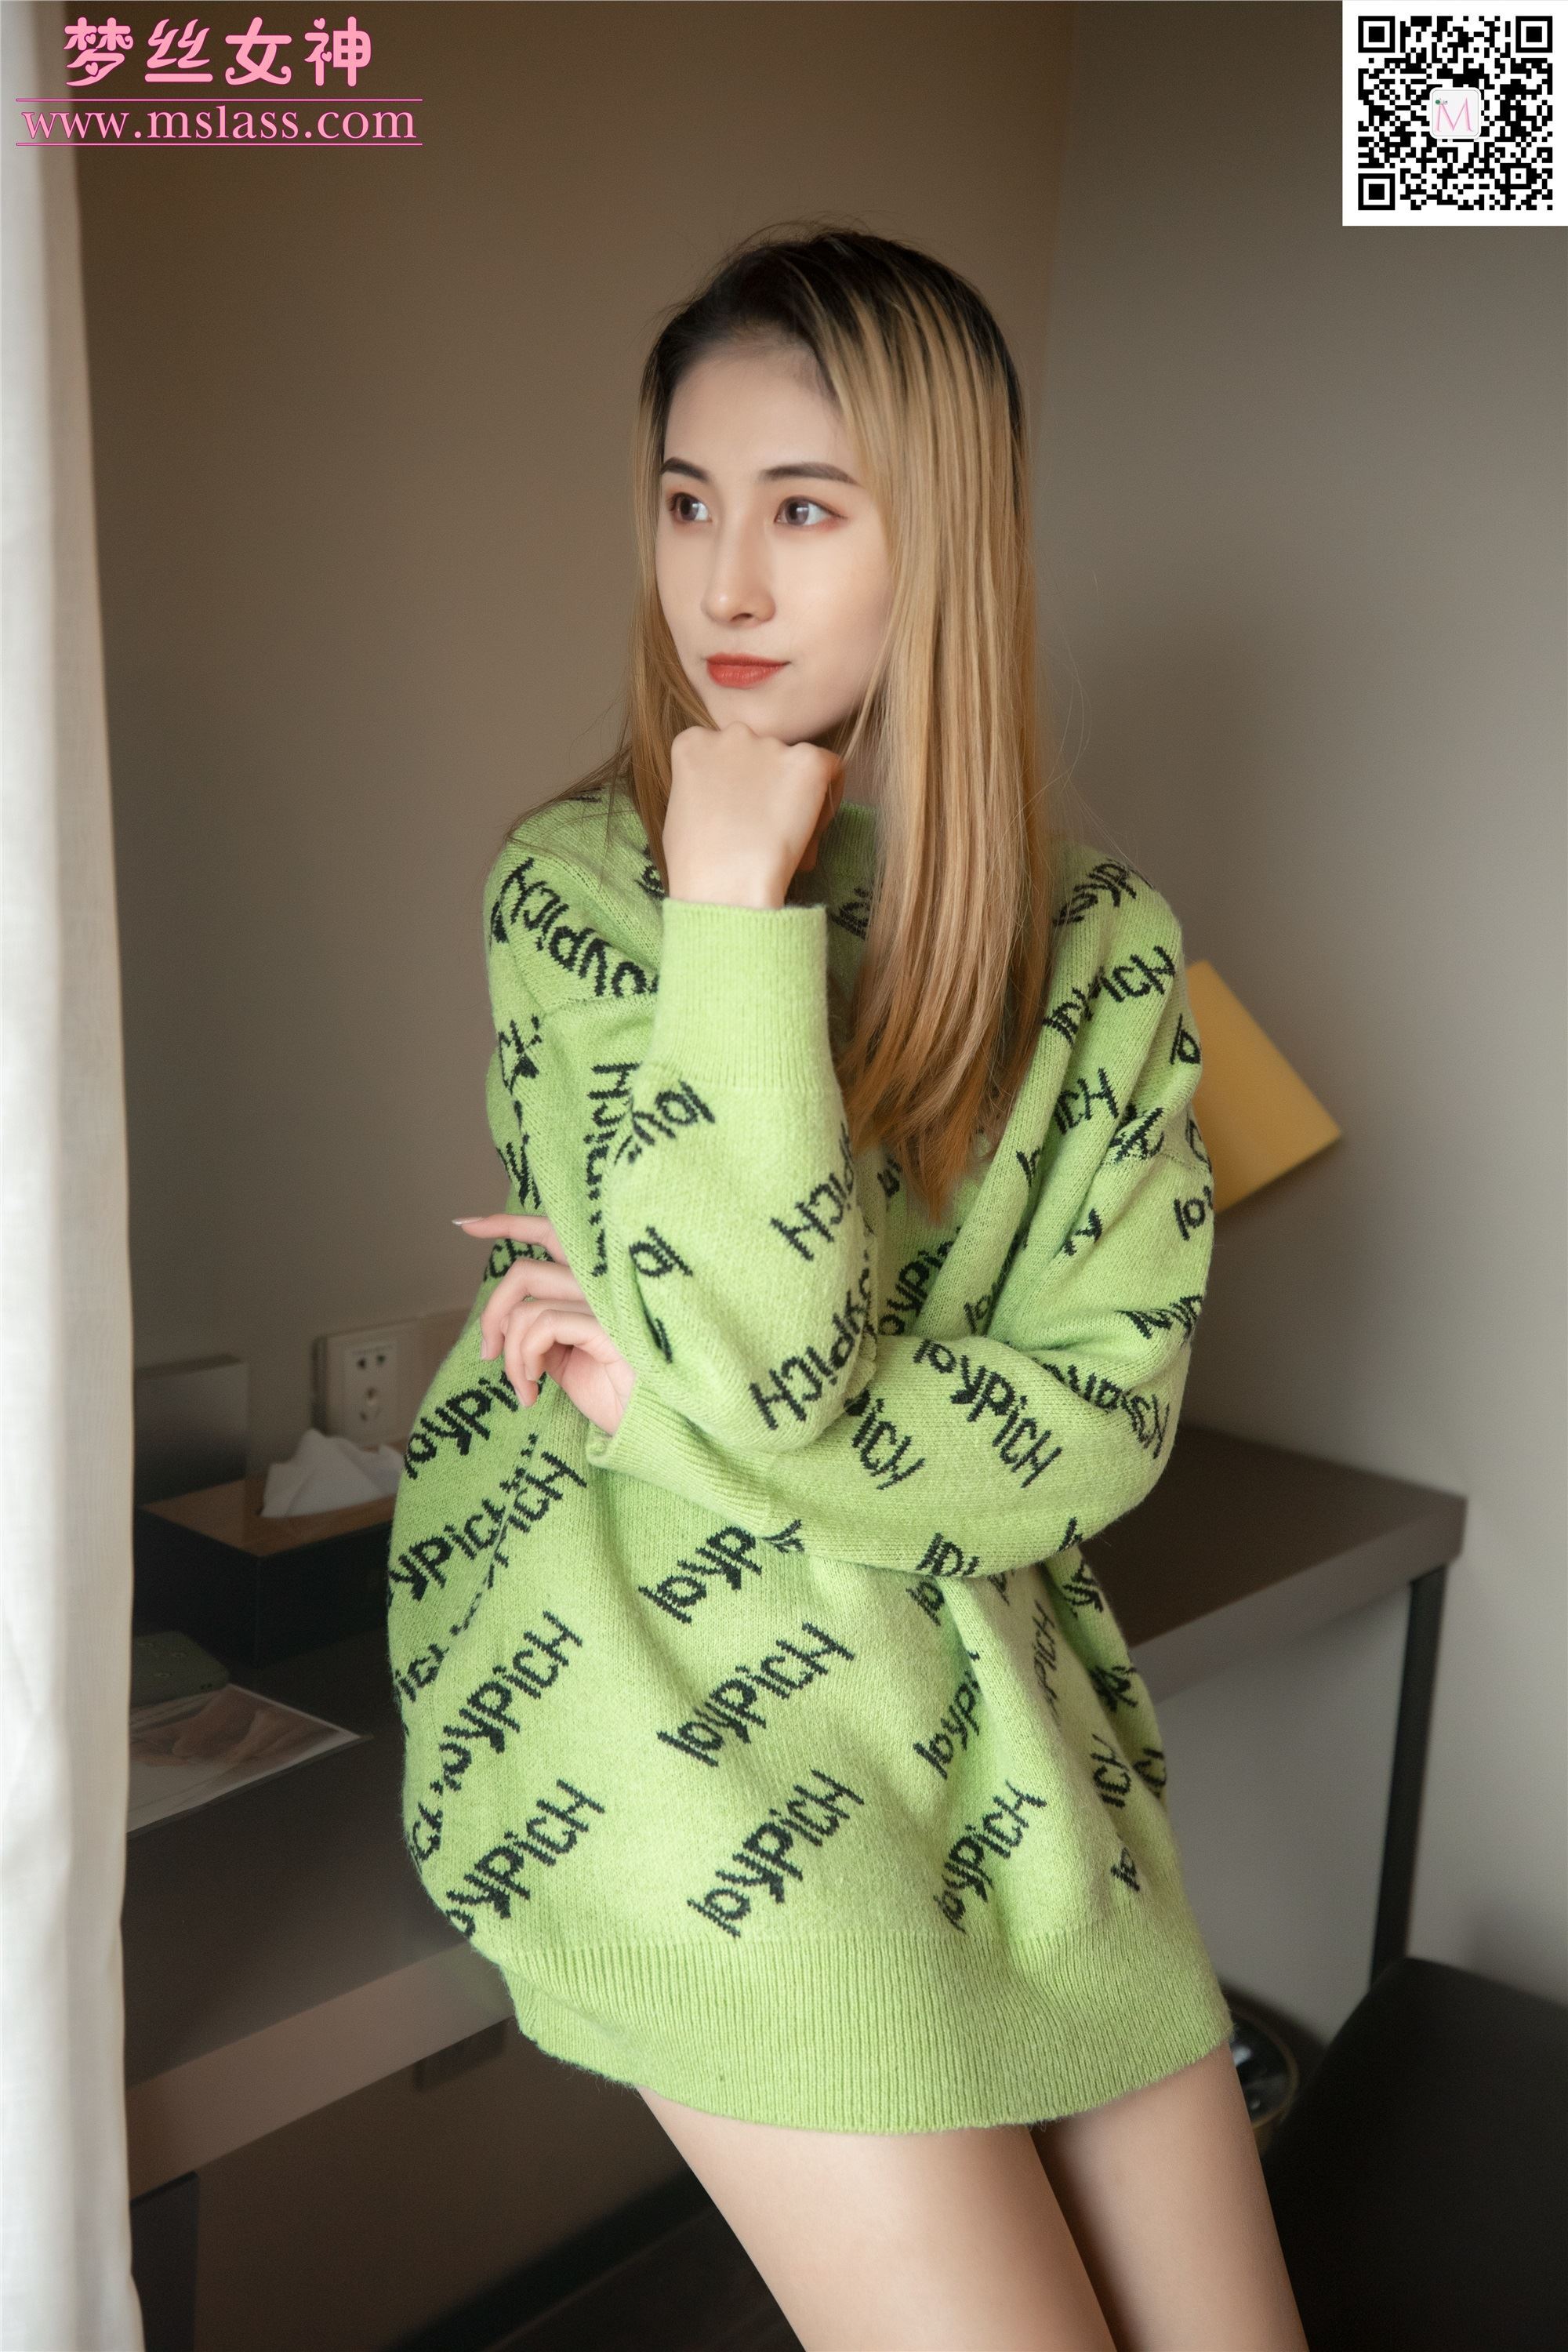 MSLASS梦丝女神 2019-11-27 Vol.075 小允儿 喜欢绿绿的衣服